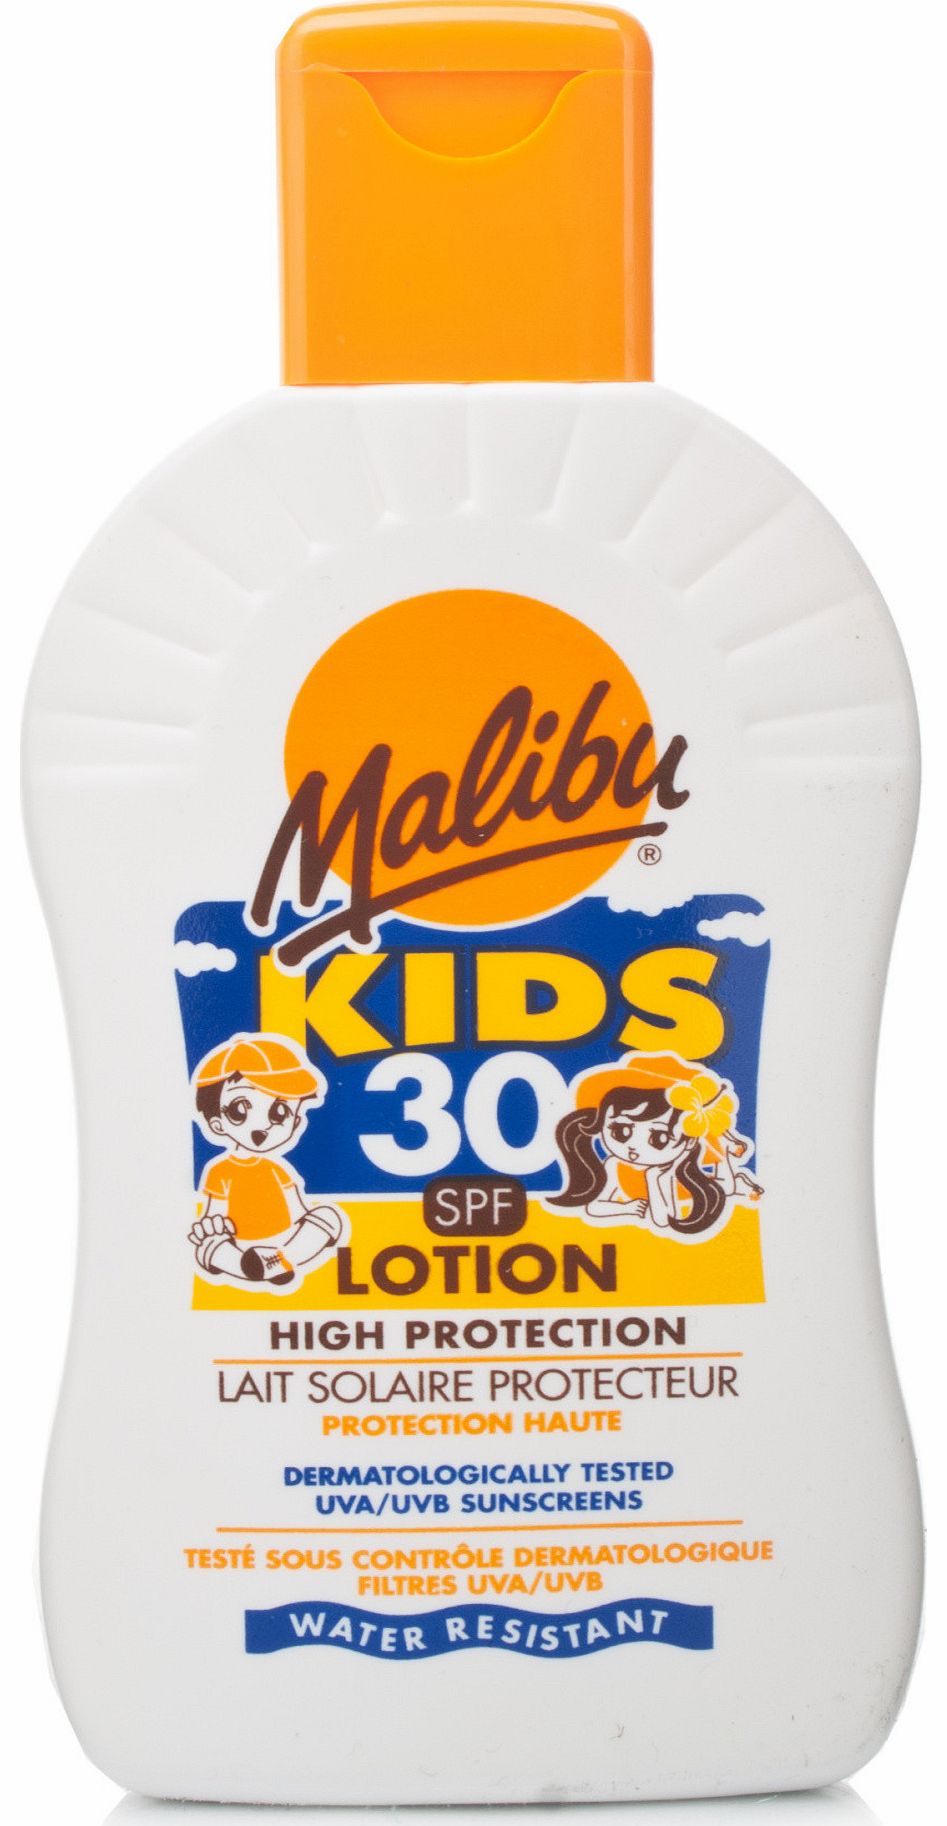 Malibu Kids SPF30 Lotion